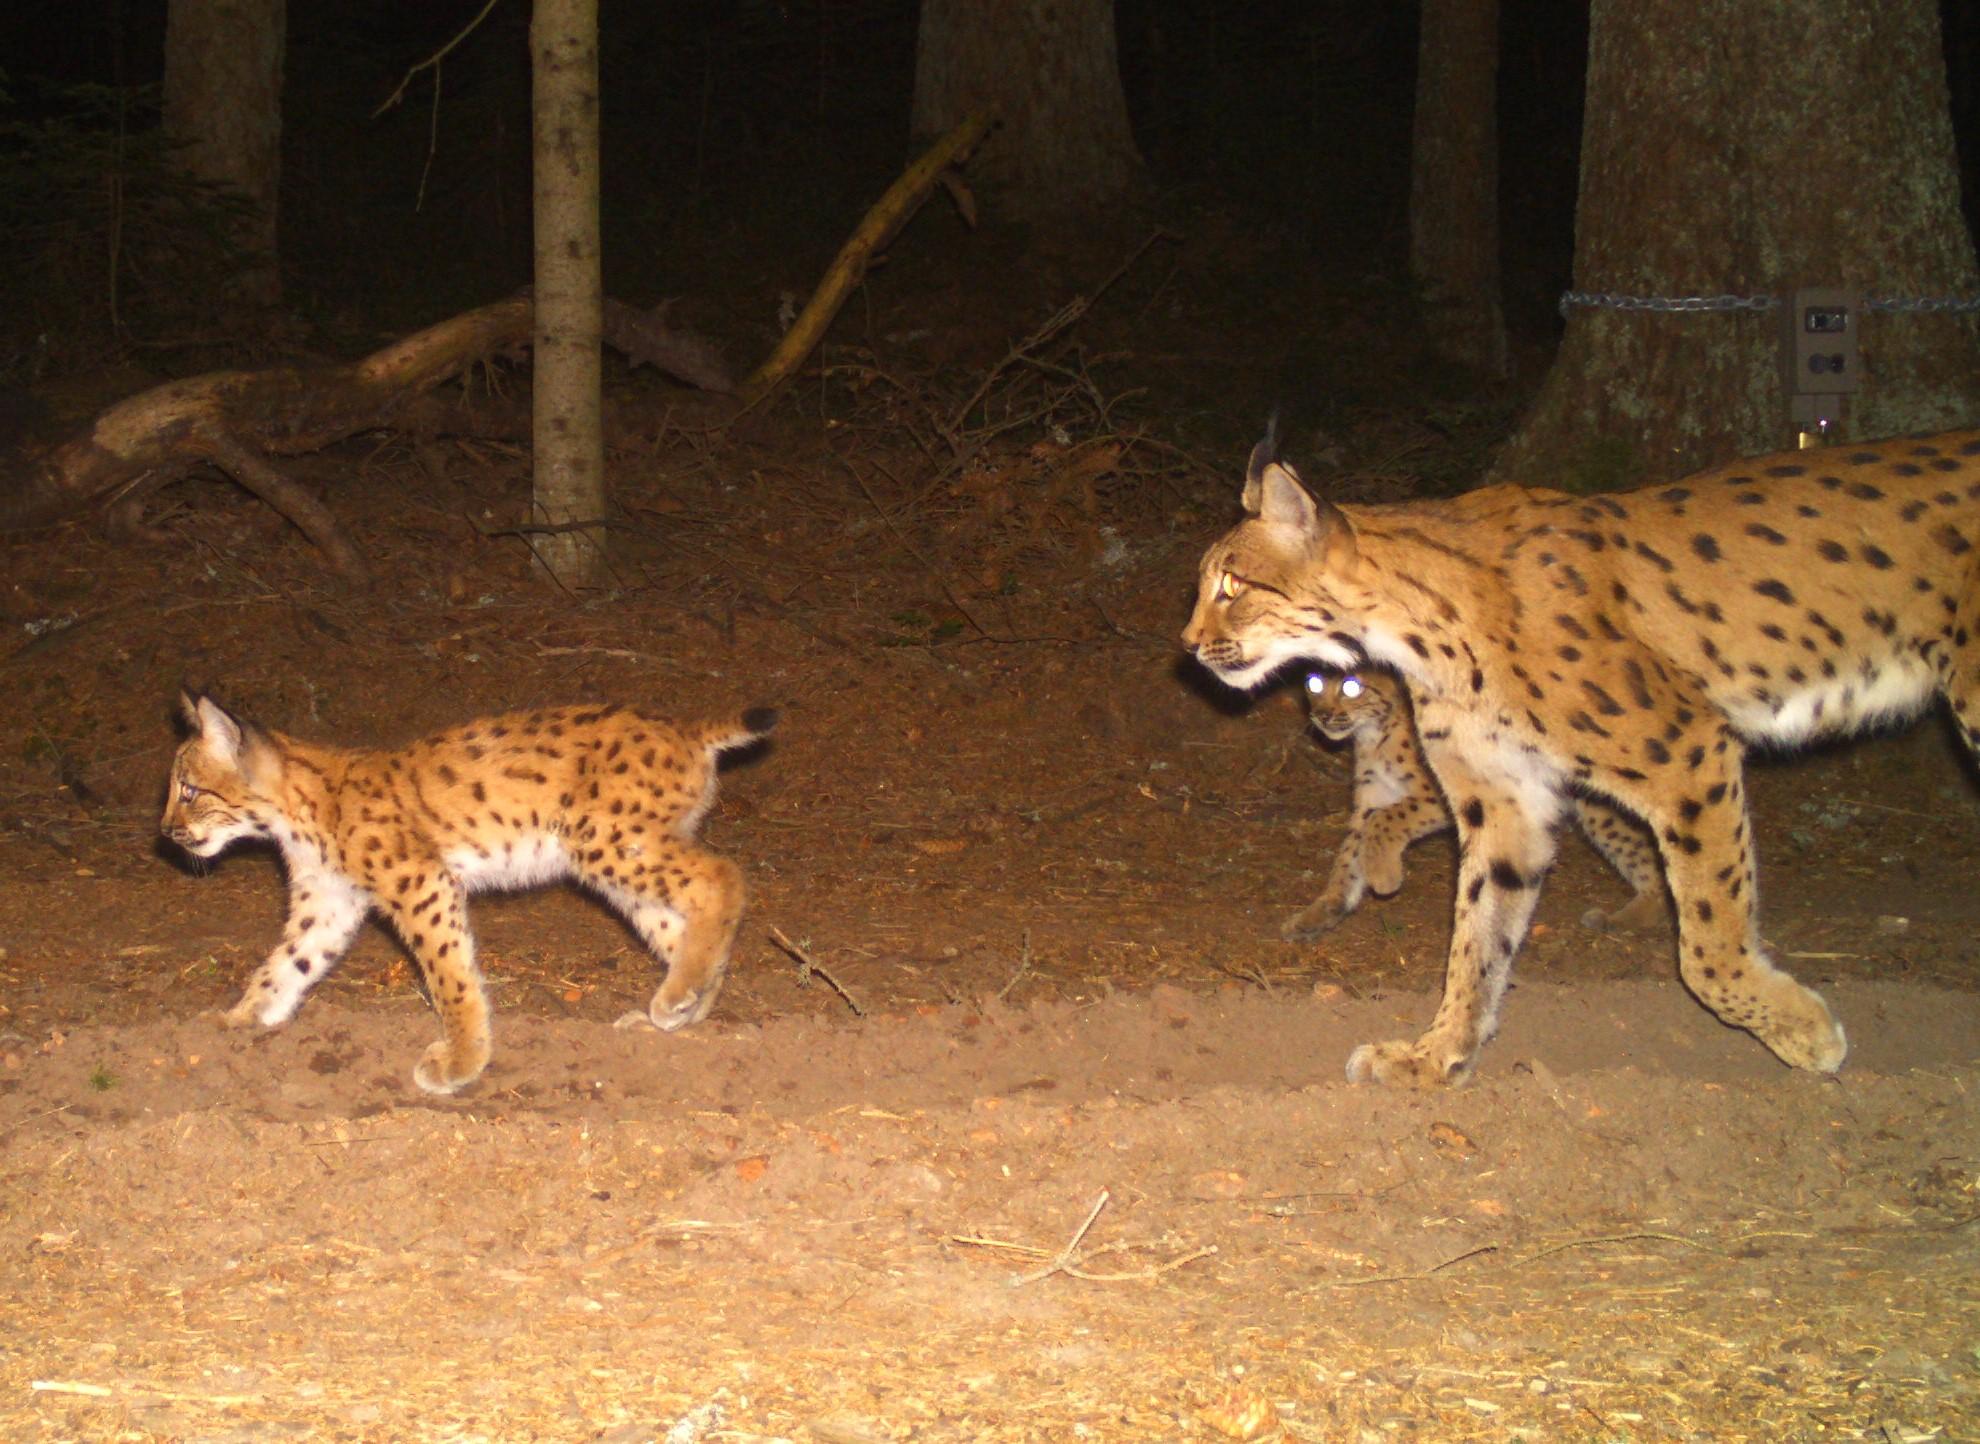  Das Bild einer automatischen Wildtierkamera dokumentiert eine Luchsin mit zwei Jungtieren.